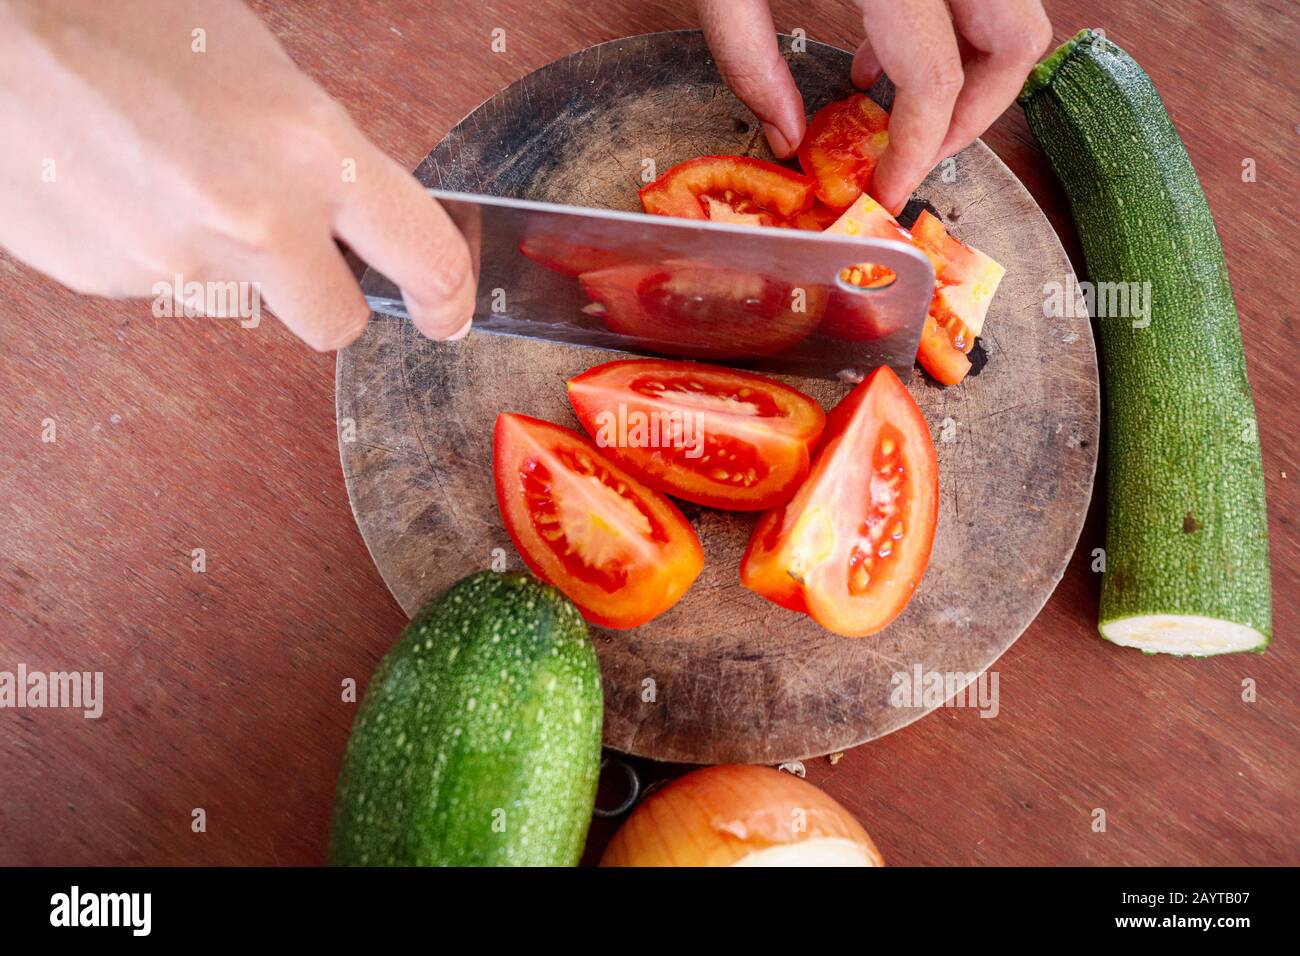 Frisches Gemüse auf Holztisch hacken, das das Konzept des veganen Lebensstils, der gesunden Ernährung und des sauberen Lebens zeigt Stockfoto